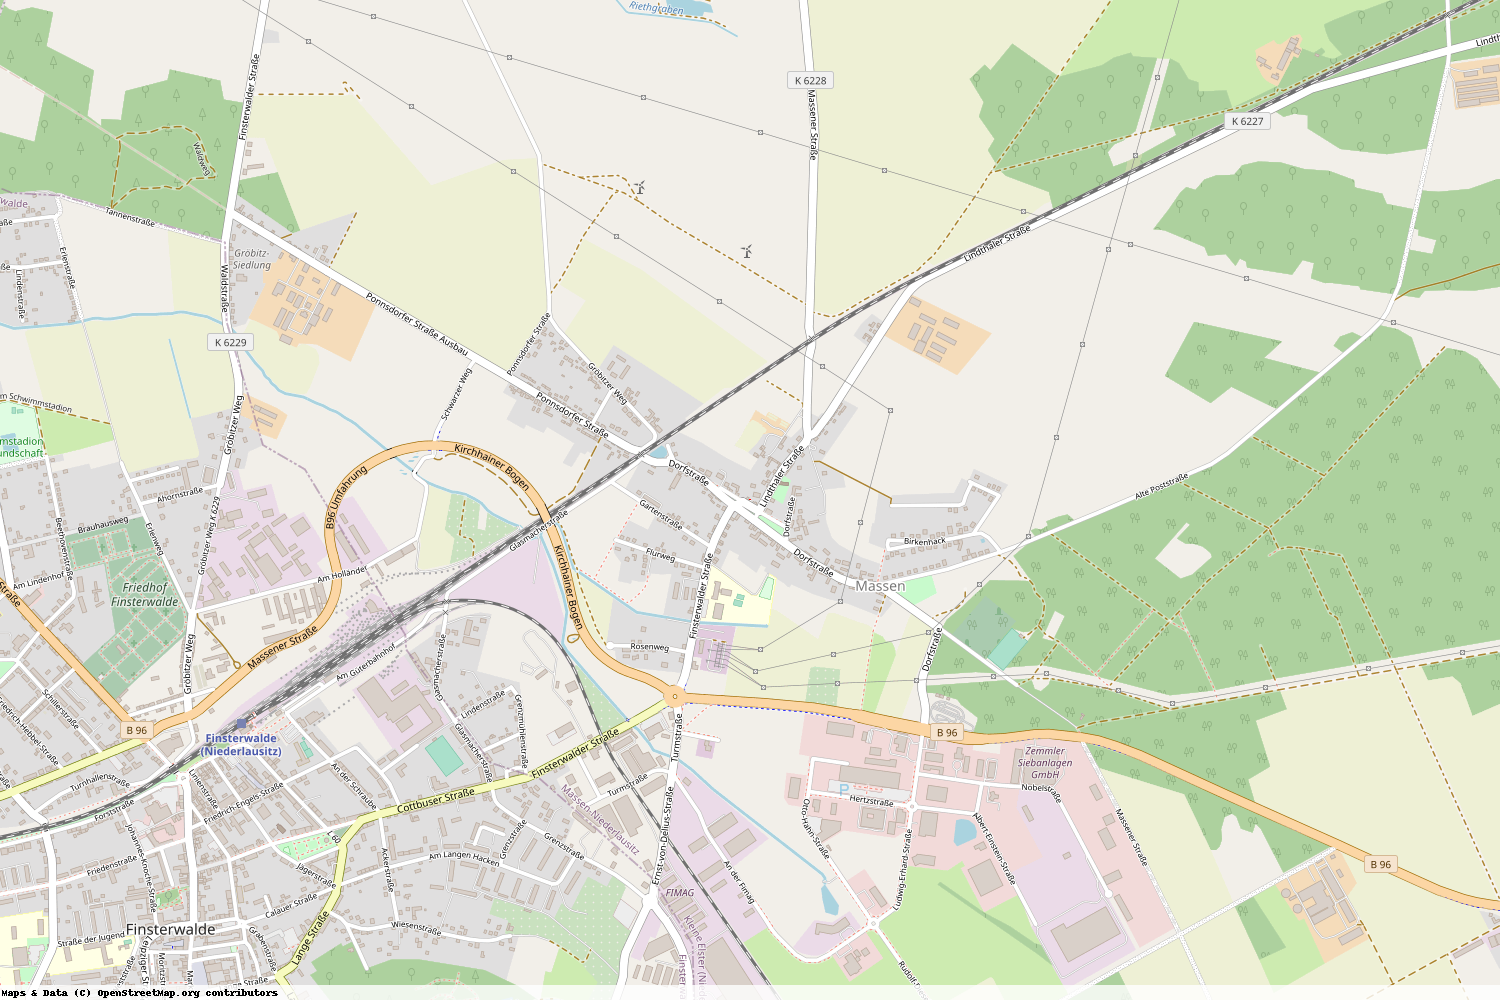 Ist gerade Stromausfall in Brandenburg - Elbe-Elster - Massen-Niederlausitz?